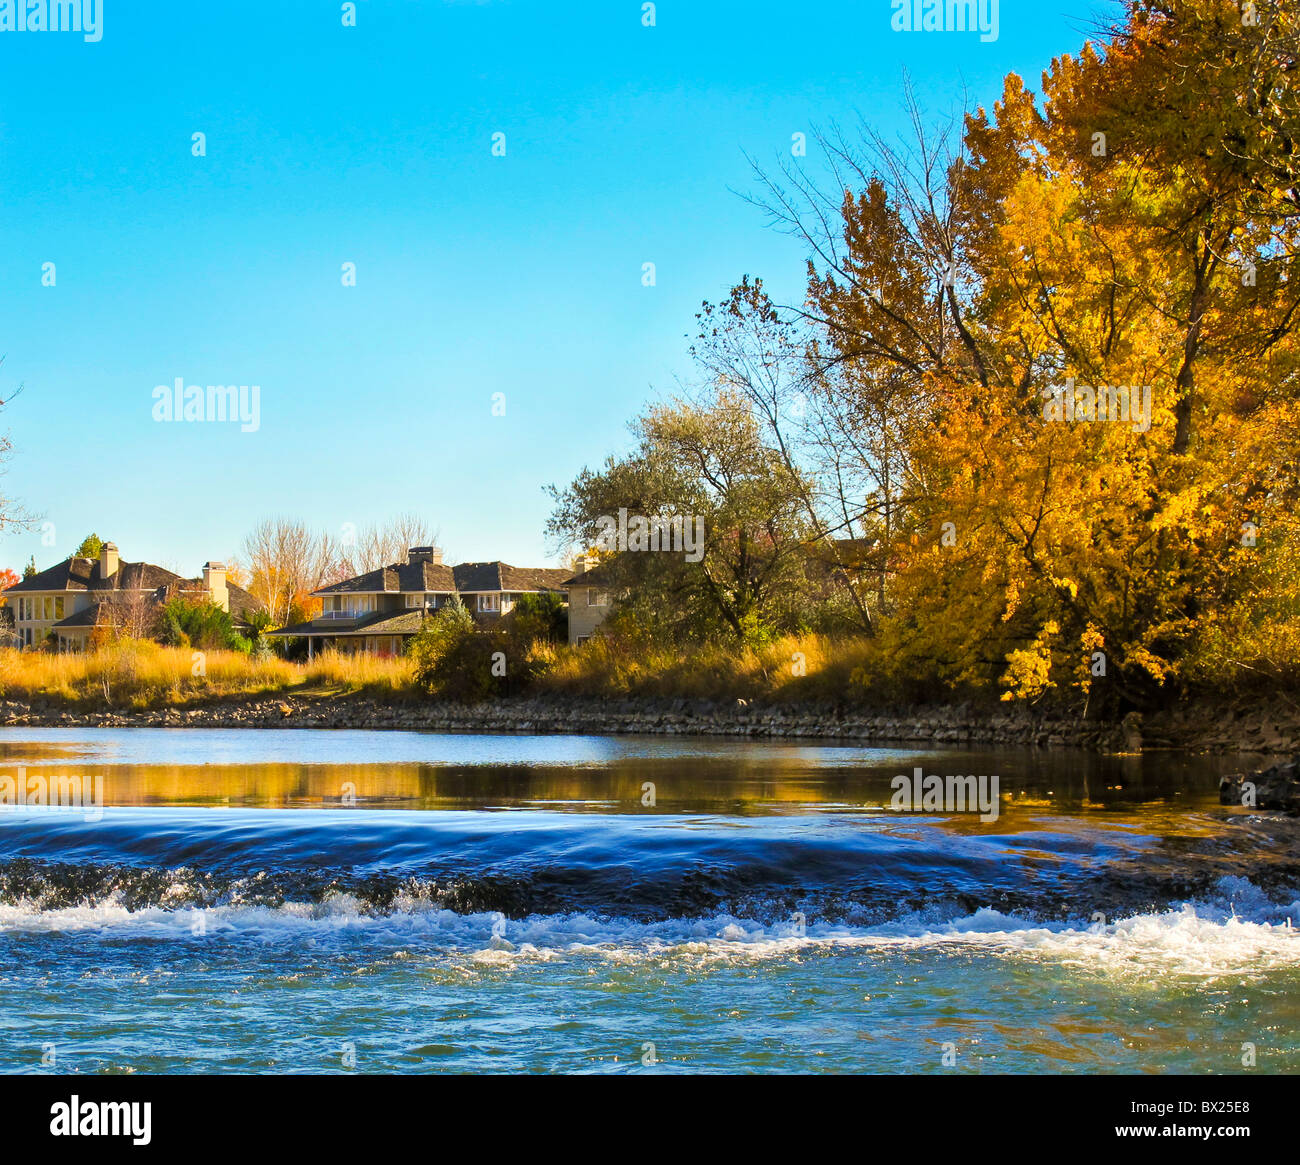 USA, Ohio, Boise, couleurs d'automne se reflétant dans la rivière de Boise. Maisons le long de la rivière Boise Greenbelt Trail. Banque D'Images